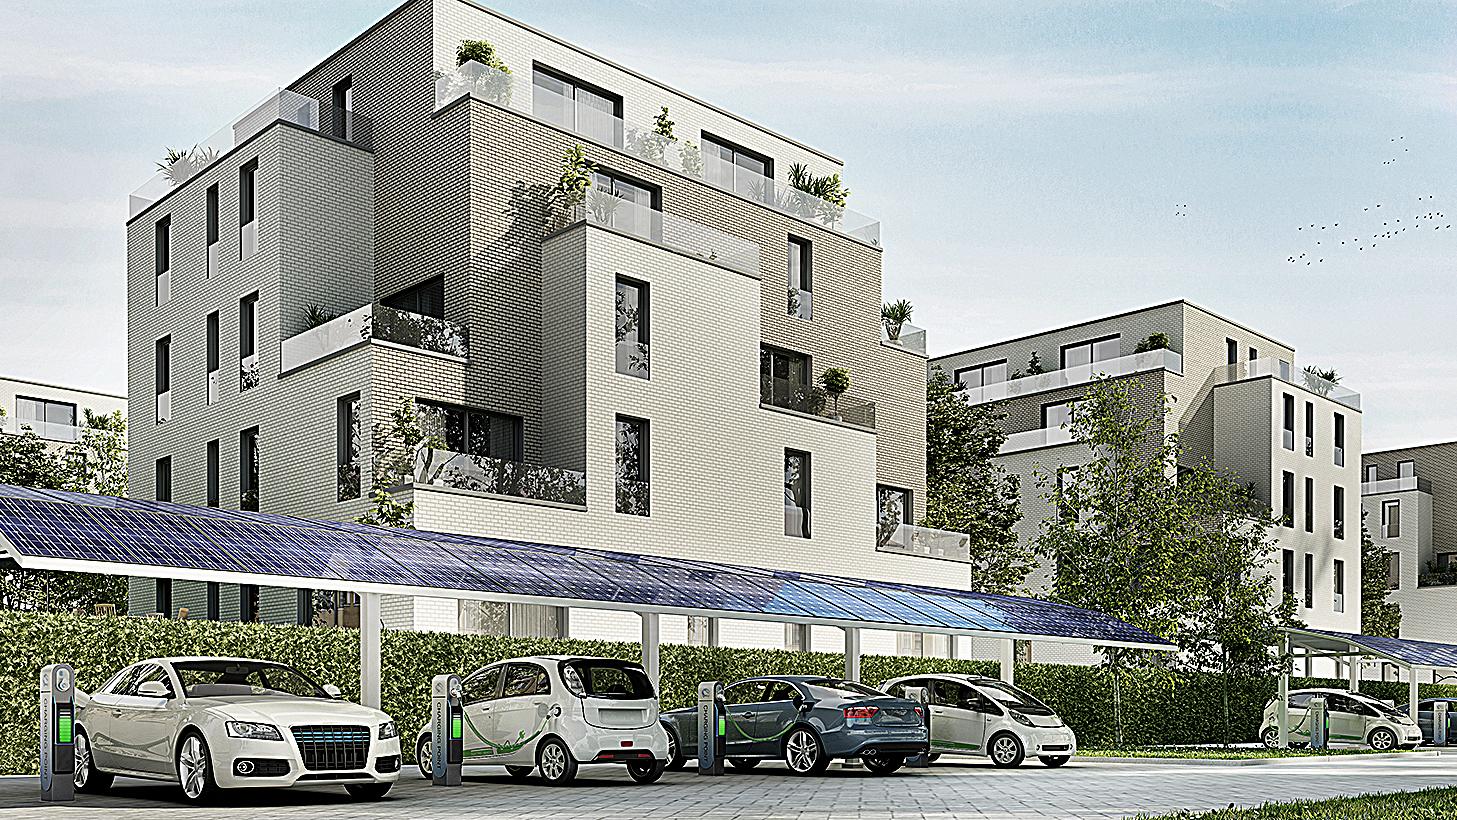 Bauen mit Energie. Modellansicht eines modernen, energieeffizienten Gebäudes. Vor dem Gebäude stehen Elektrofahrzeuge, die an Ladestationen angeschlossen sind unter einem PV-Carport.